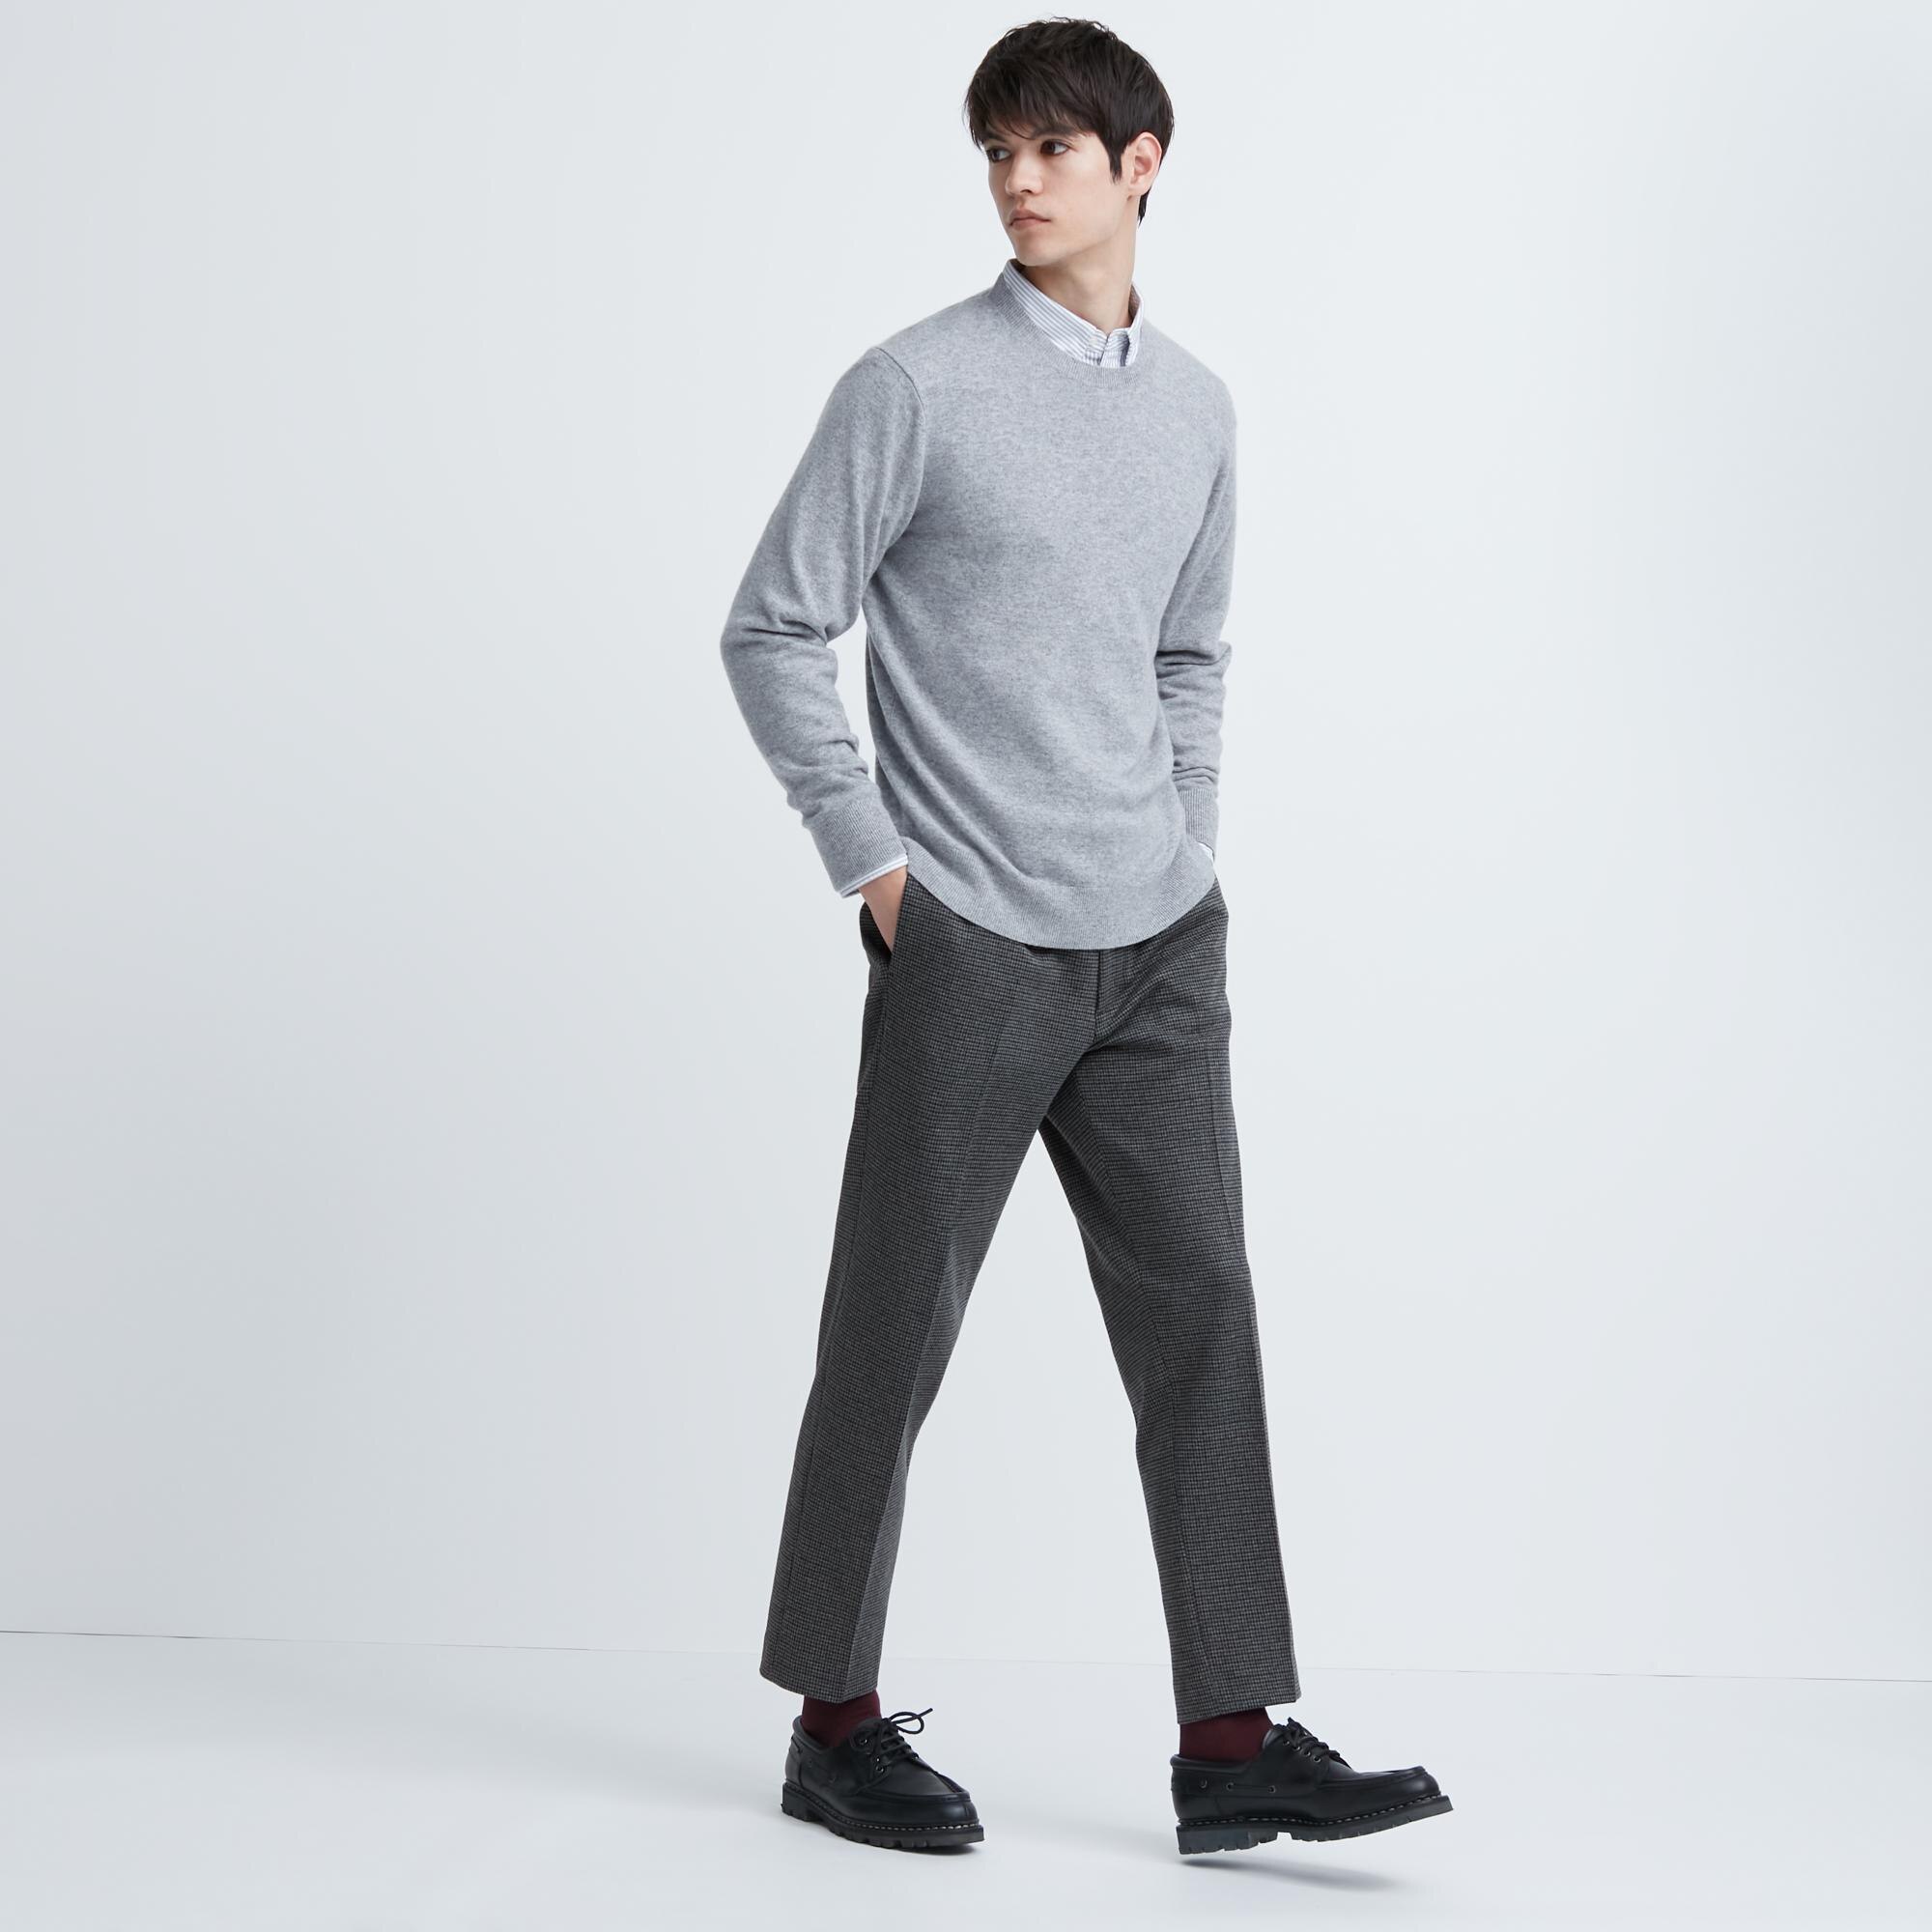 Slim Fit Cigarette trousers - Beige - Men | H&M IN